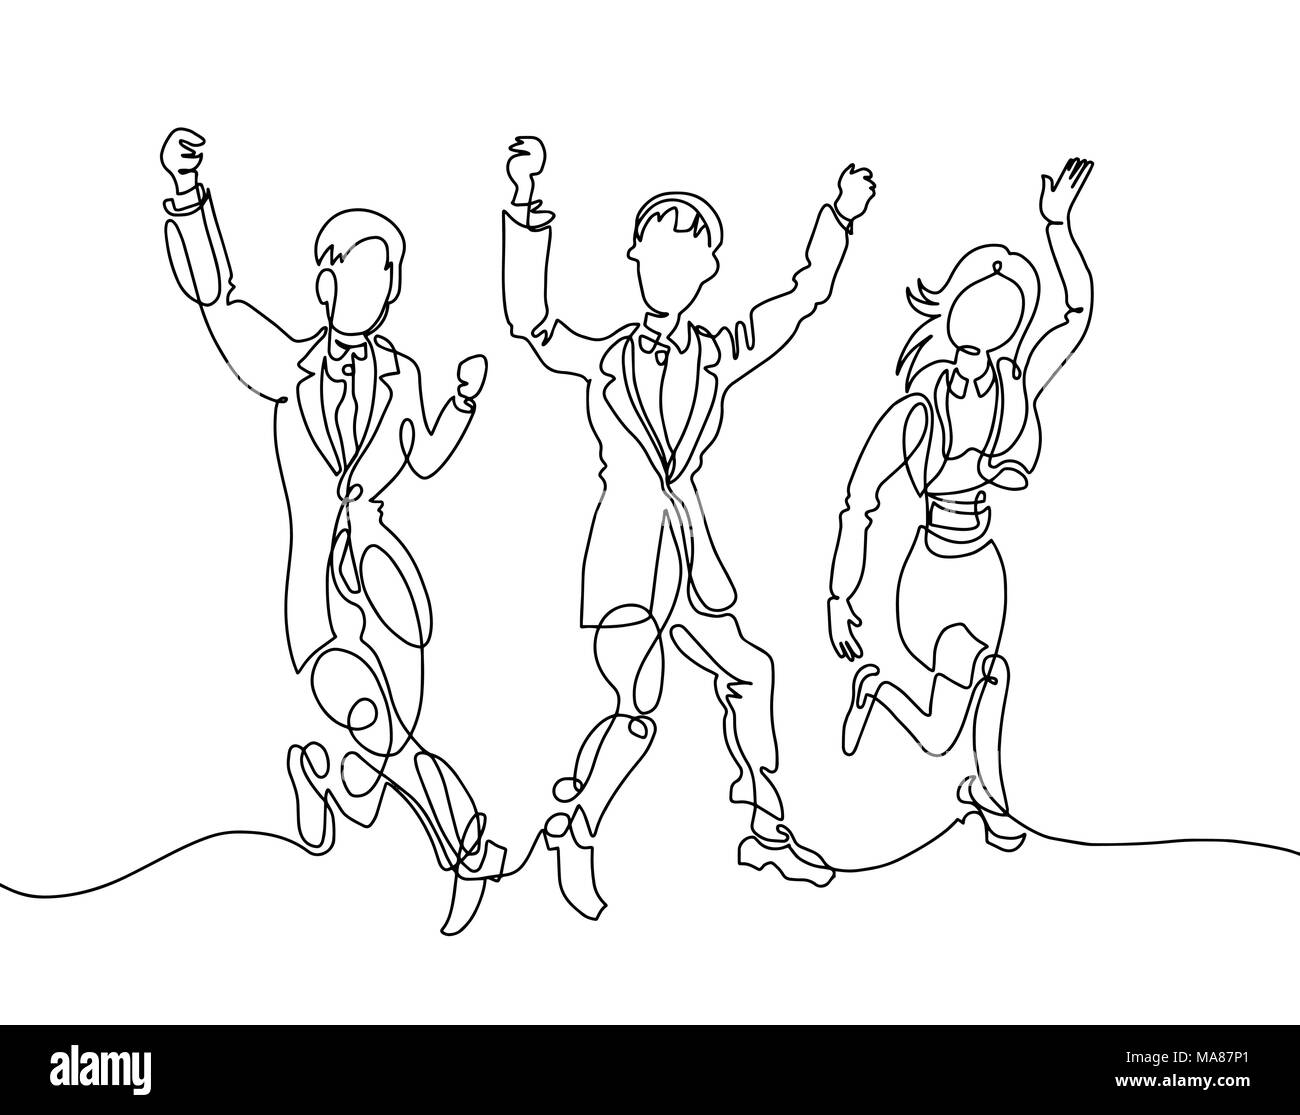 Le dessin des lignes de trois professionnels personnes - deux hommes et une fille happil Illustration de Vecteur